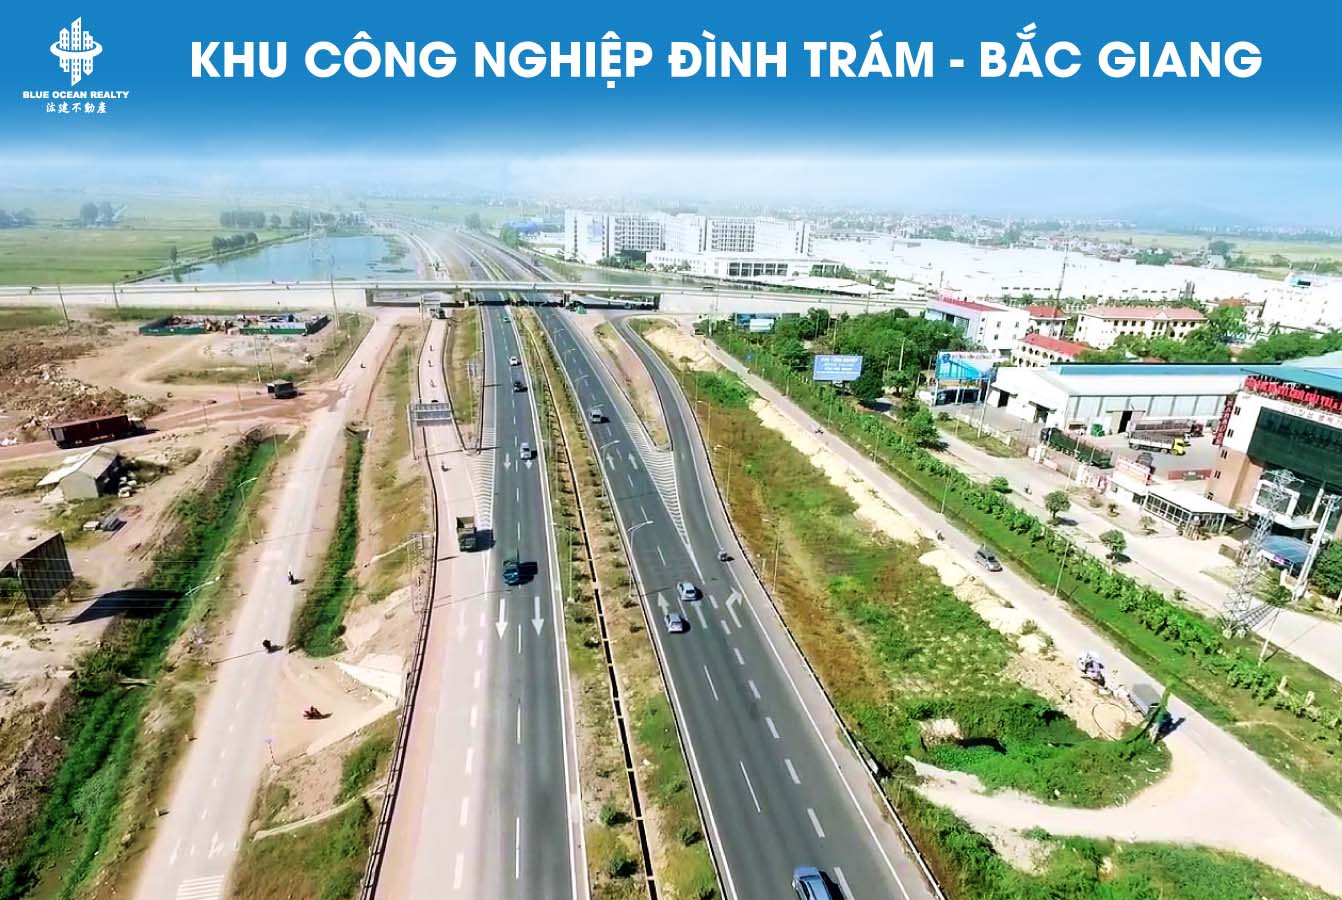 Khu công nghiệp Đình Trám tỉnh Bắc Giang